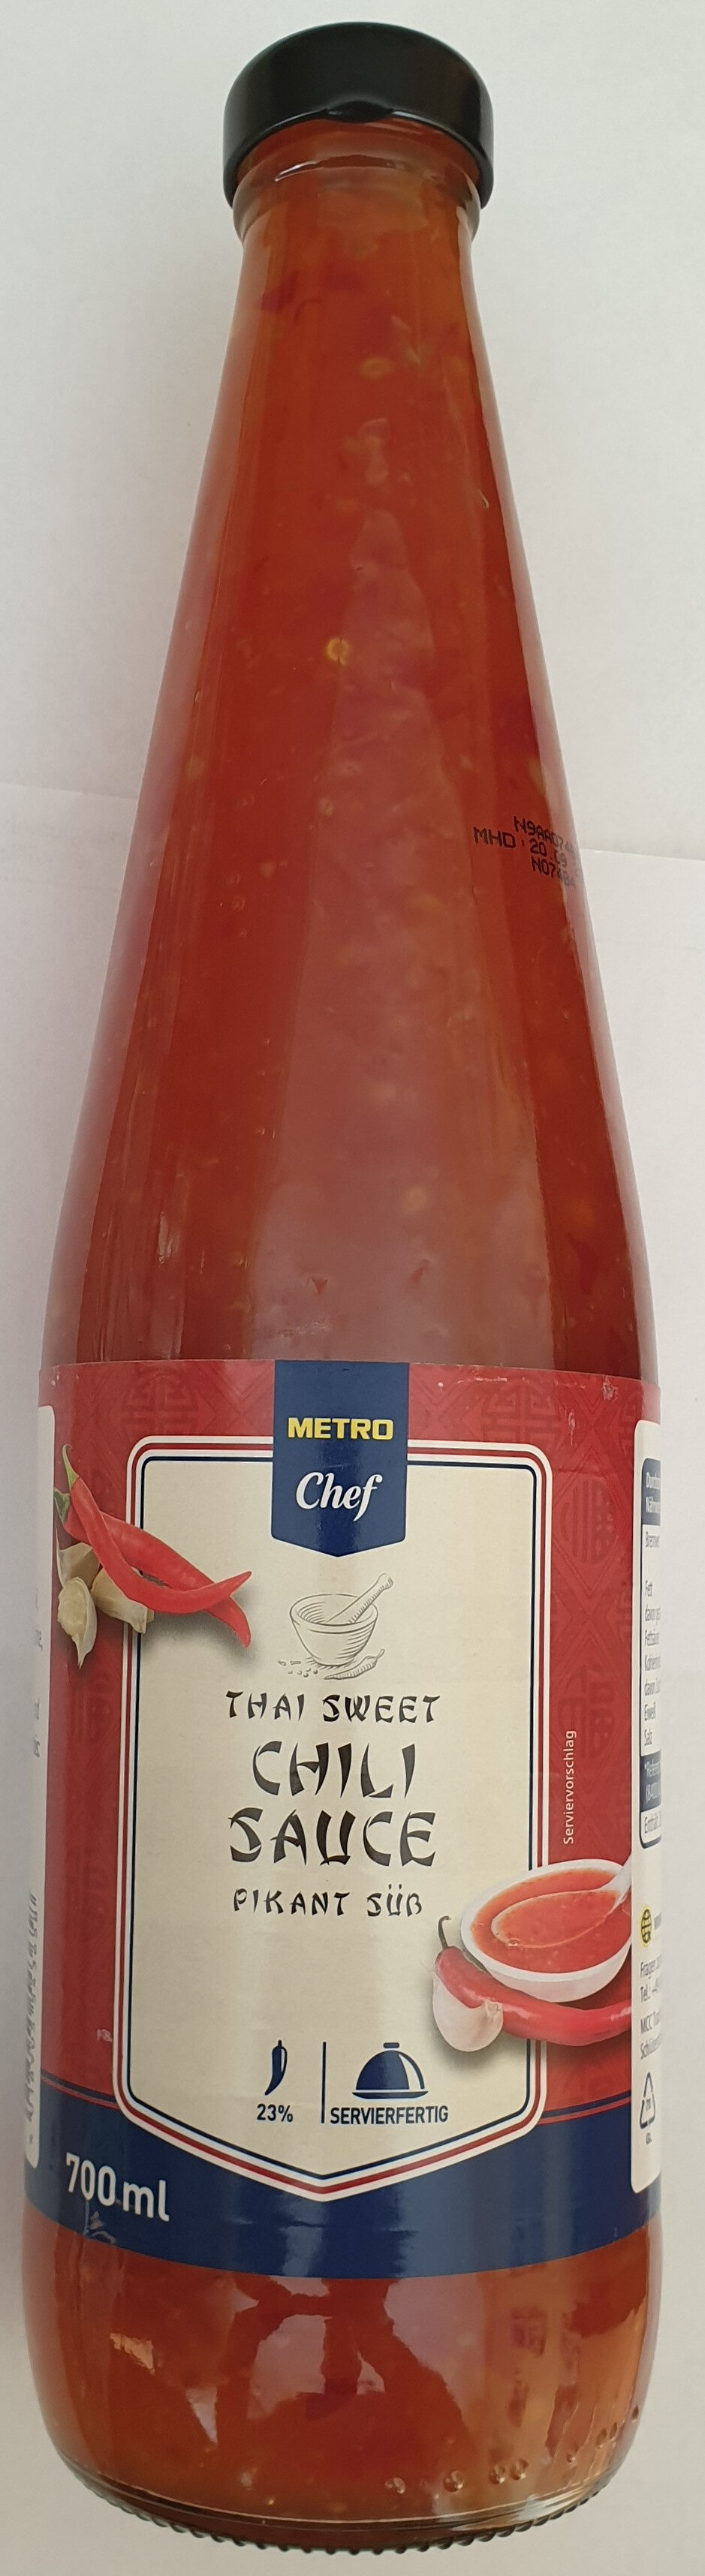 Thai sweet Chili Sauce pikant süß - Product - de